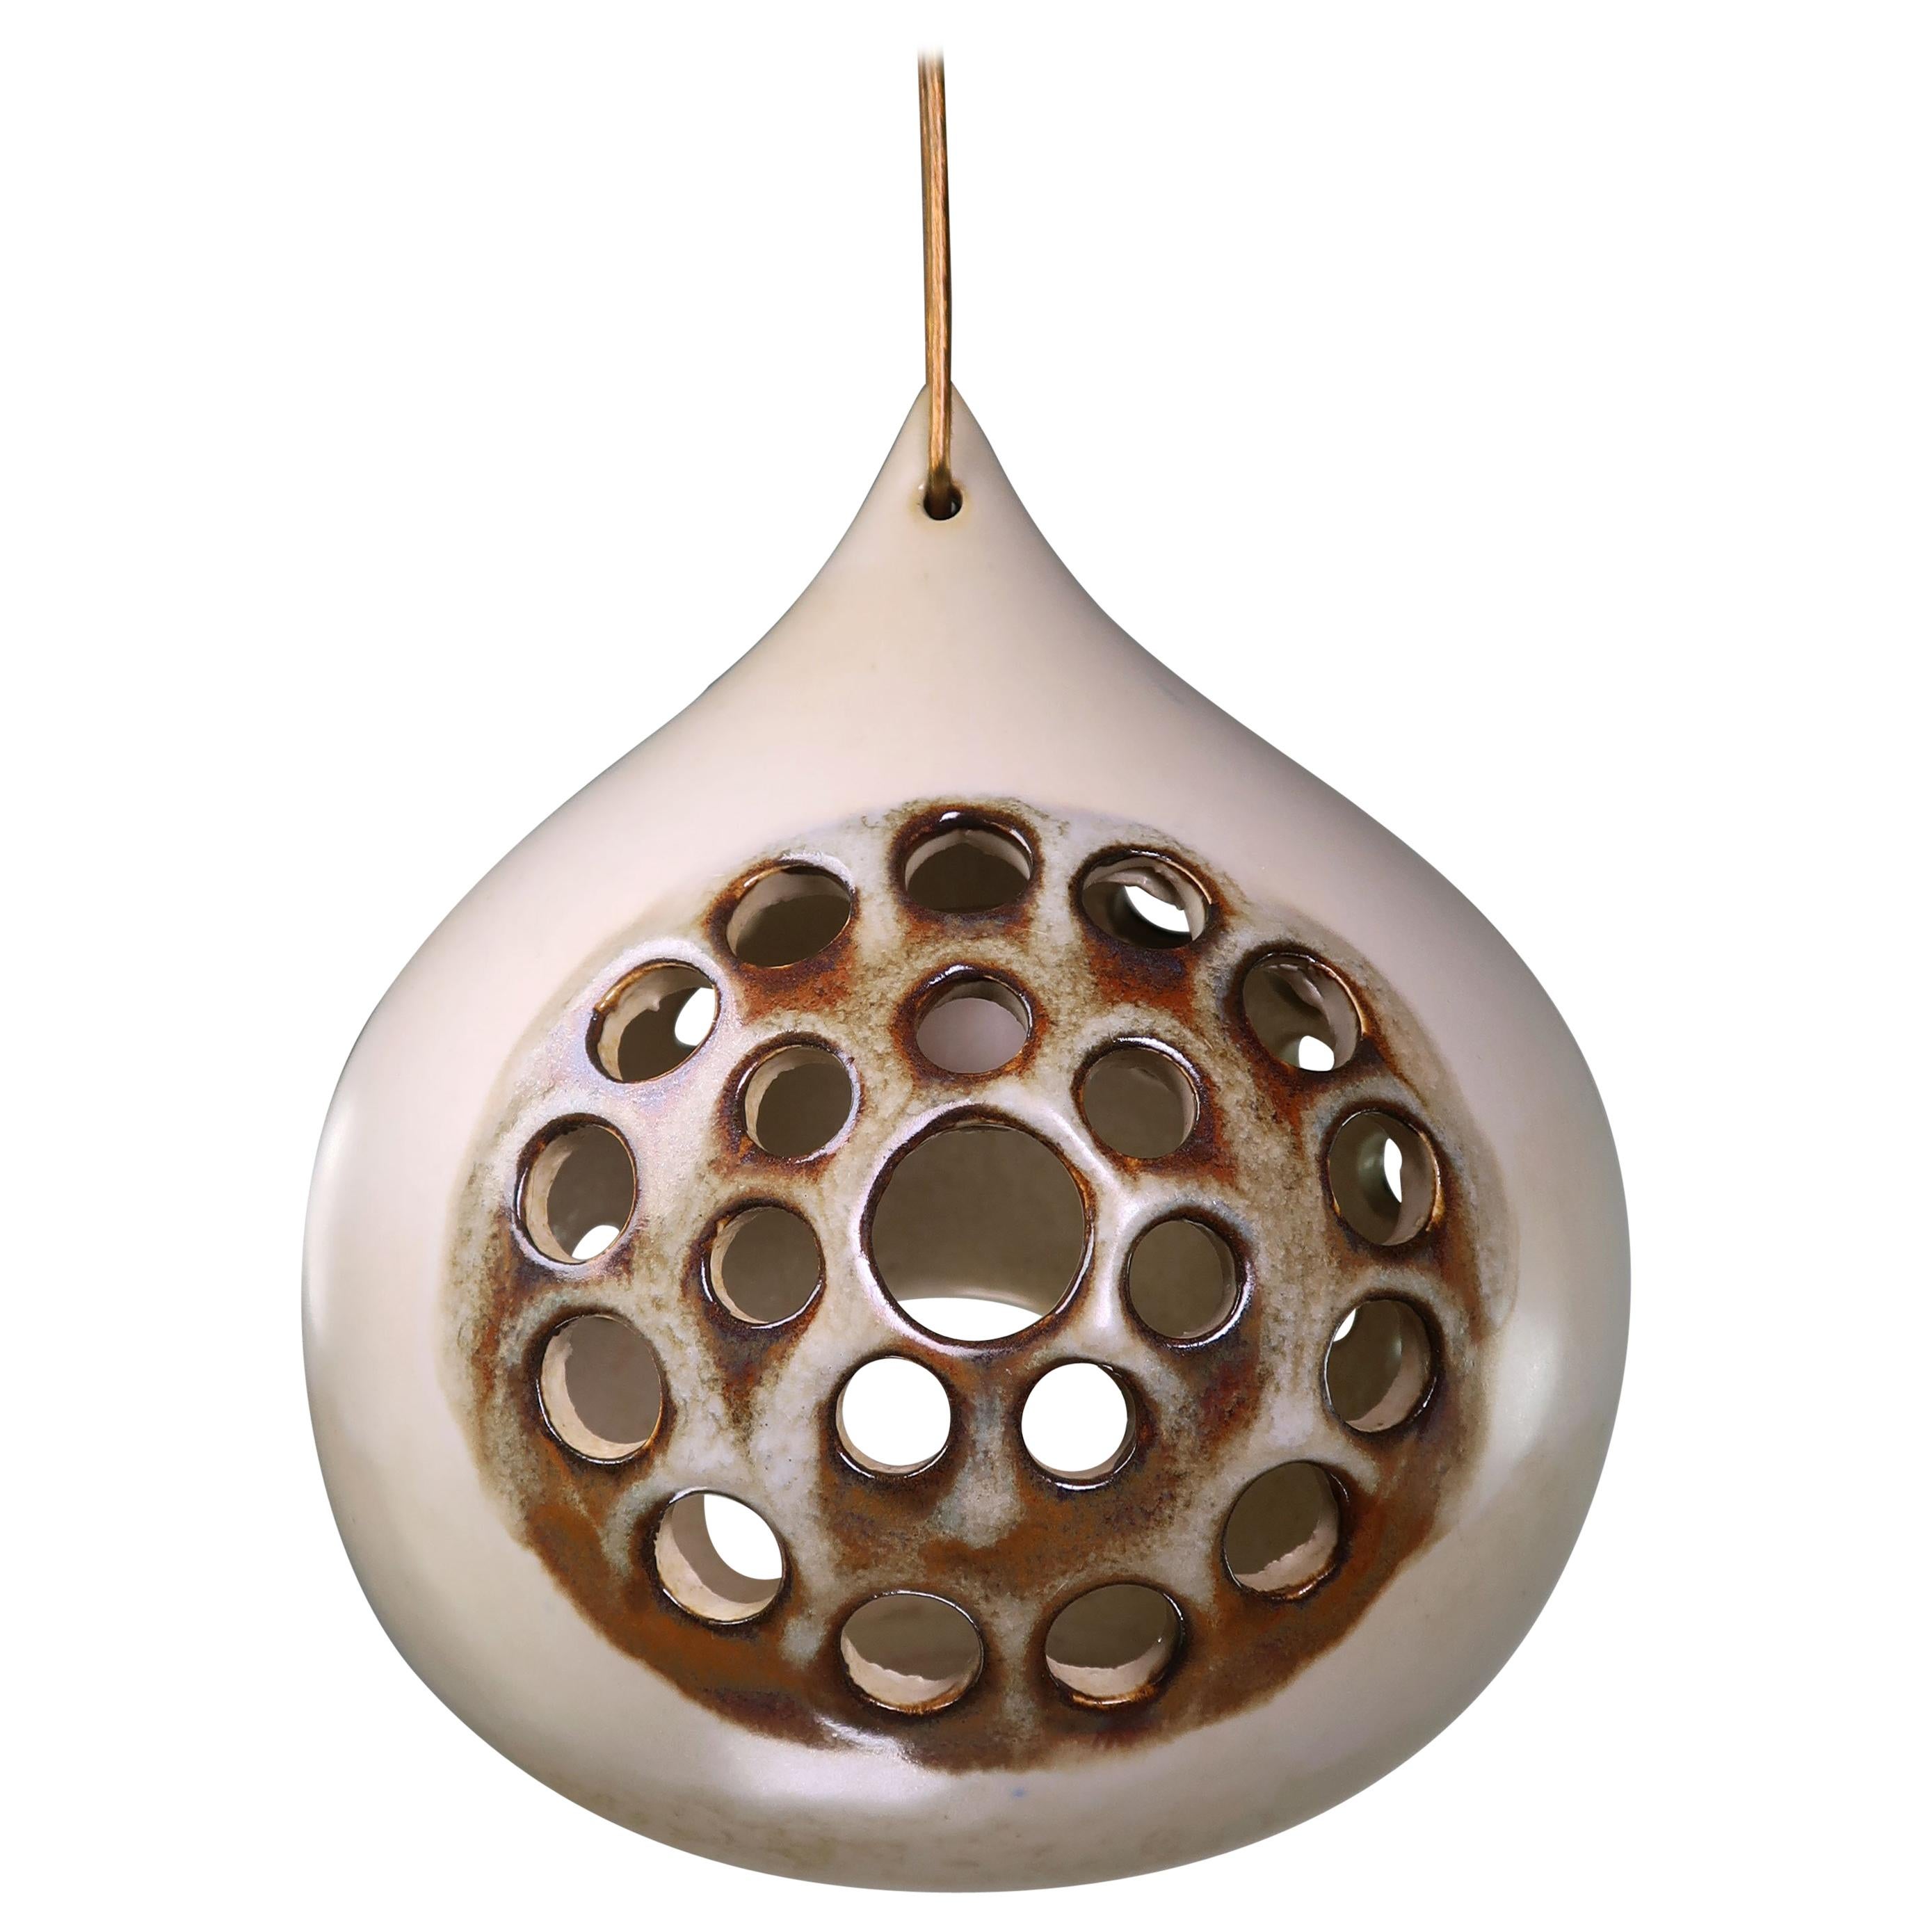 Joseph Simon Perforated Stoneware Lantern Pendant, Denmark, 1960s